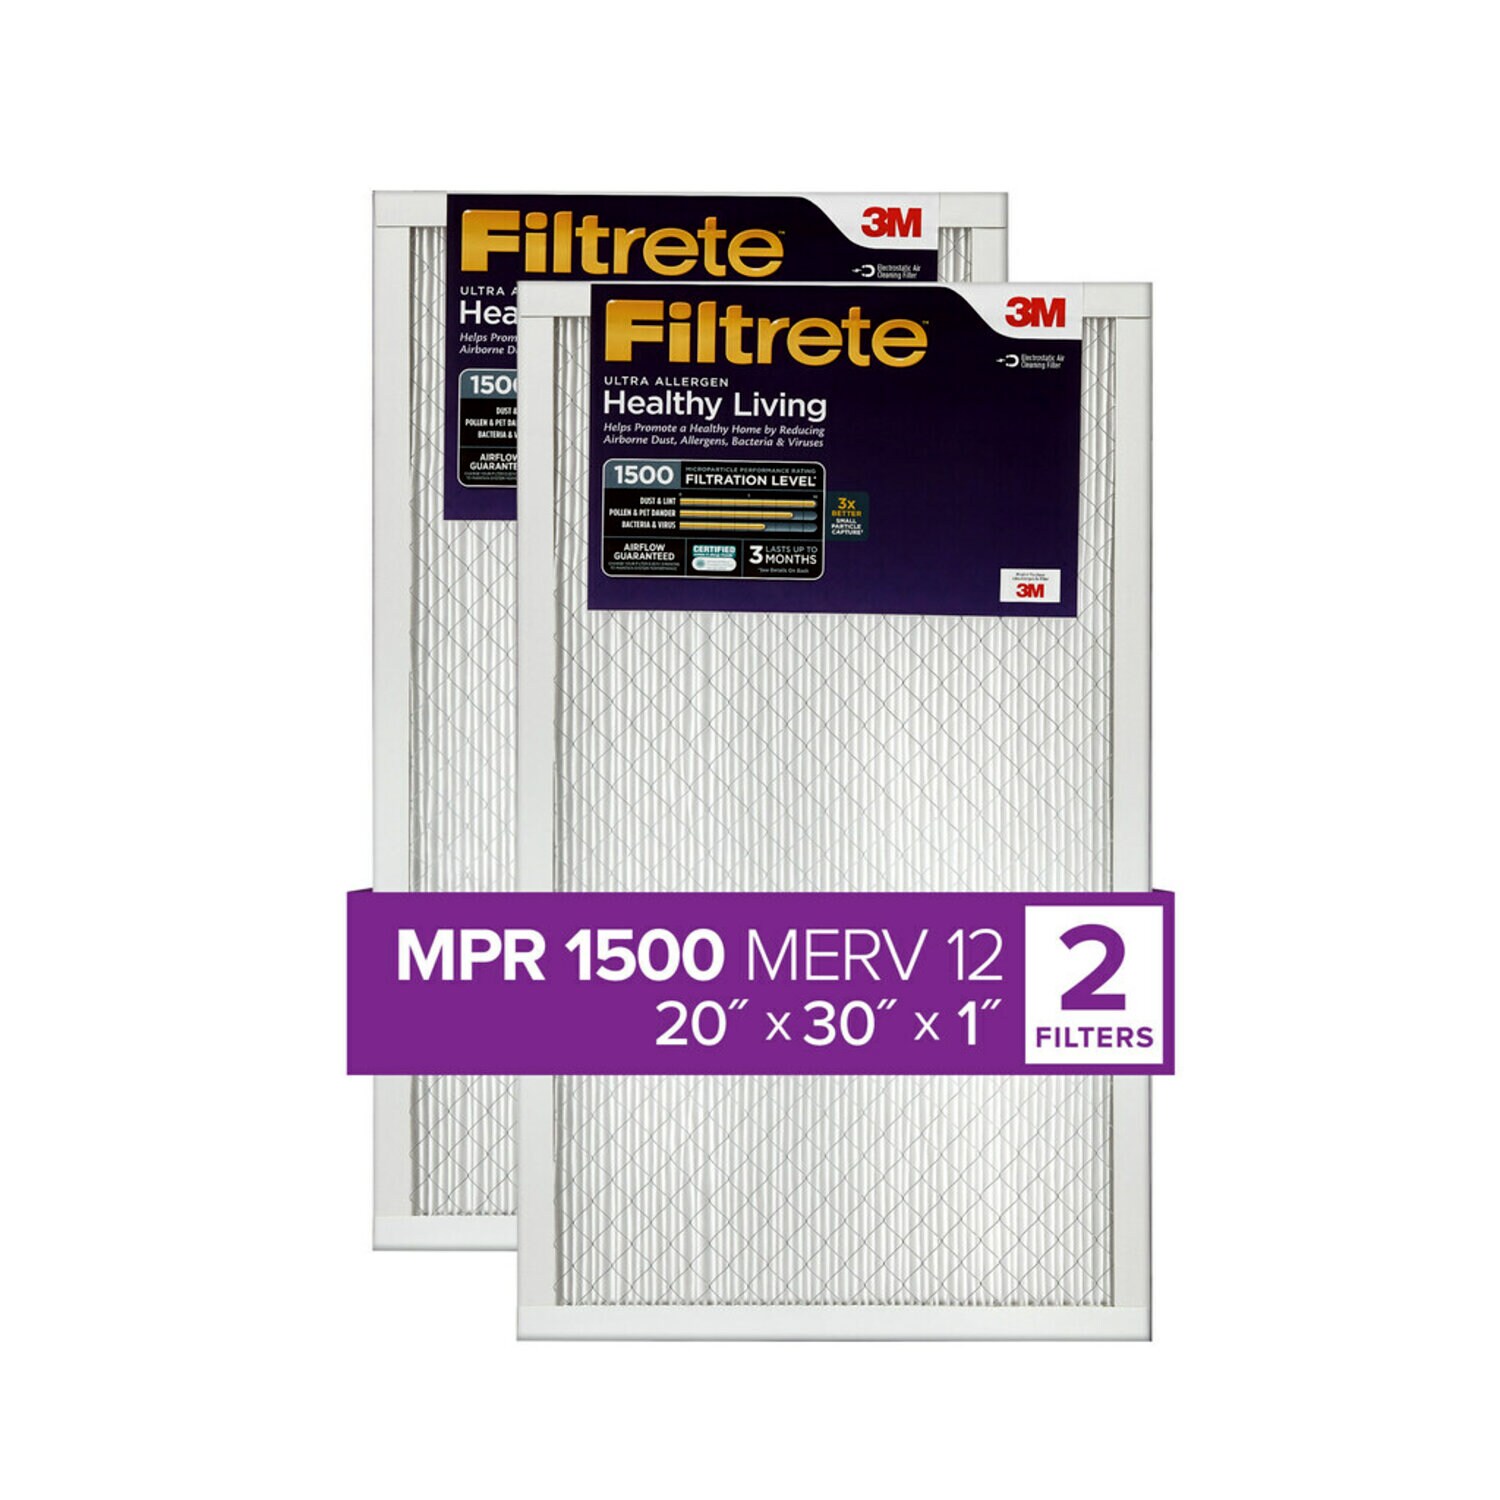 7100250885 - Filtrete Ultra Allergen Reduction Filter UR22-2PK-1E, 20 in x 30 in x 1 in (50.8 cm x 76.2 cm x 2.5 cm)